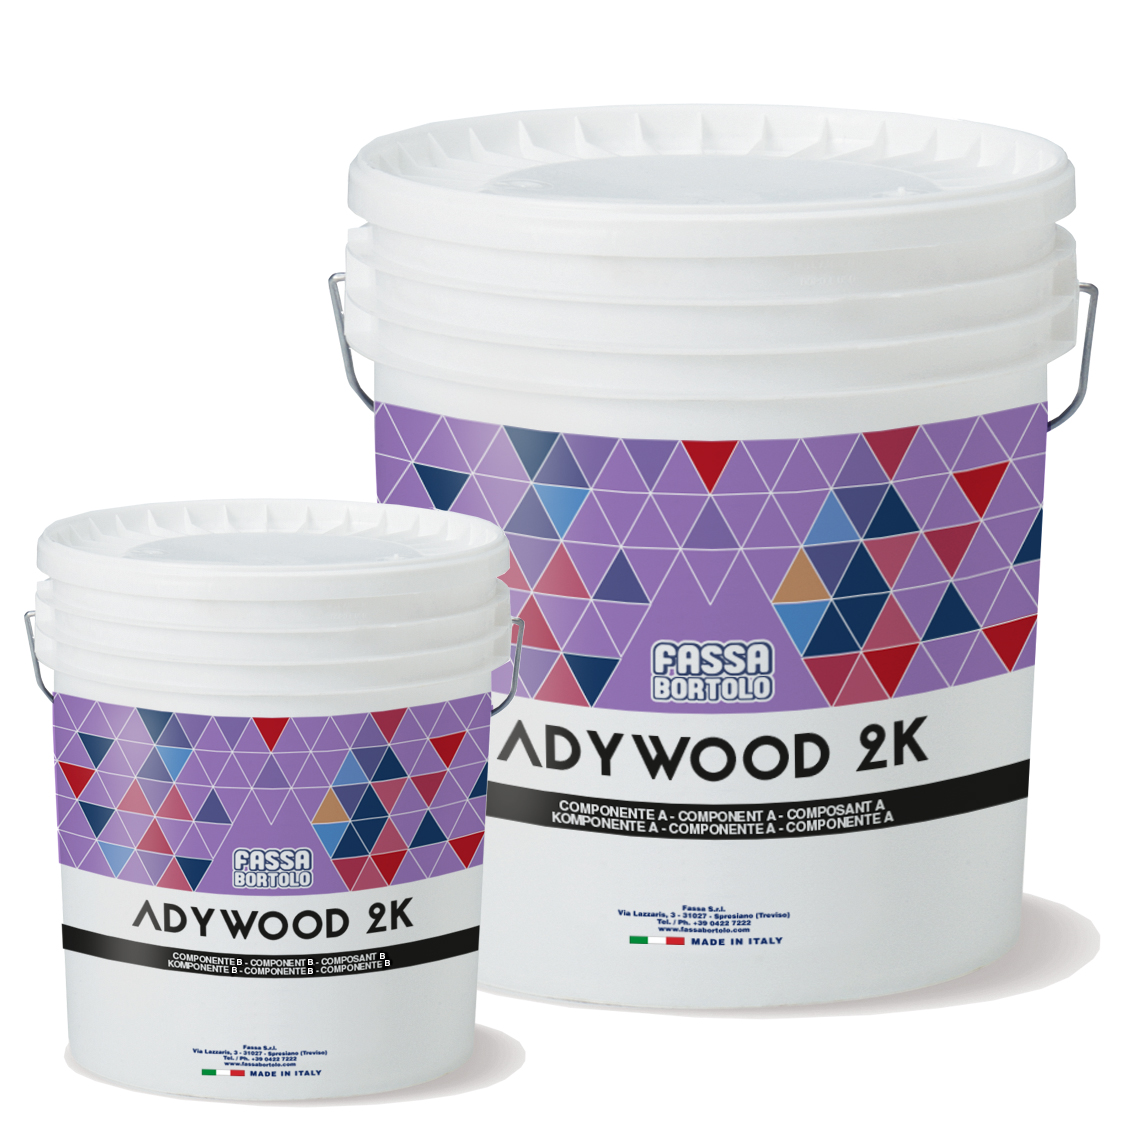 ADYWOOD 2K: Adhesivo bicomponente epoxi-poliuretano para el encolado de pavimentos de madera